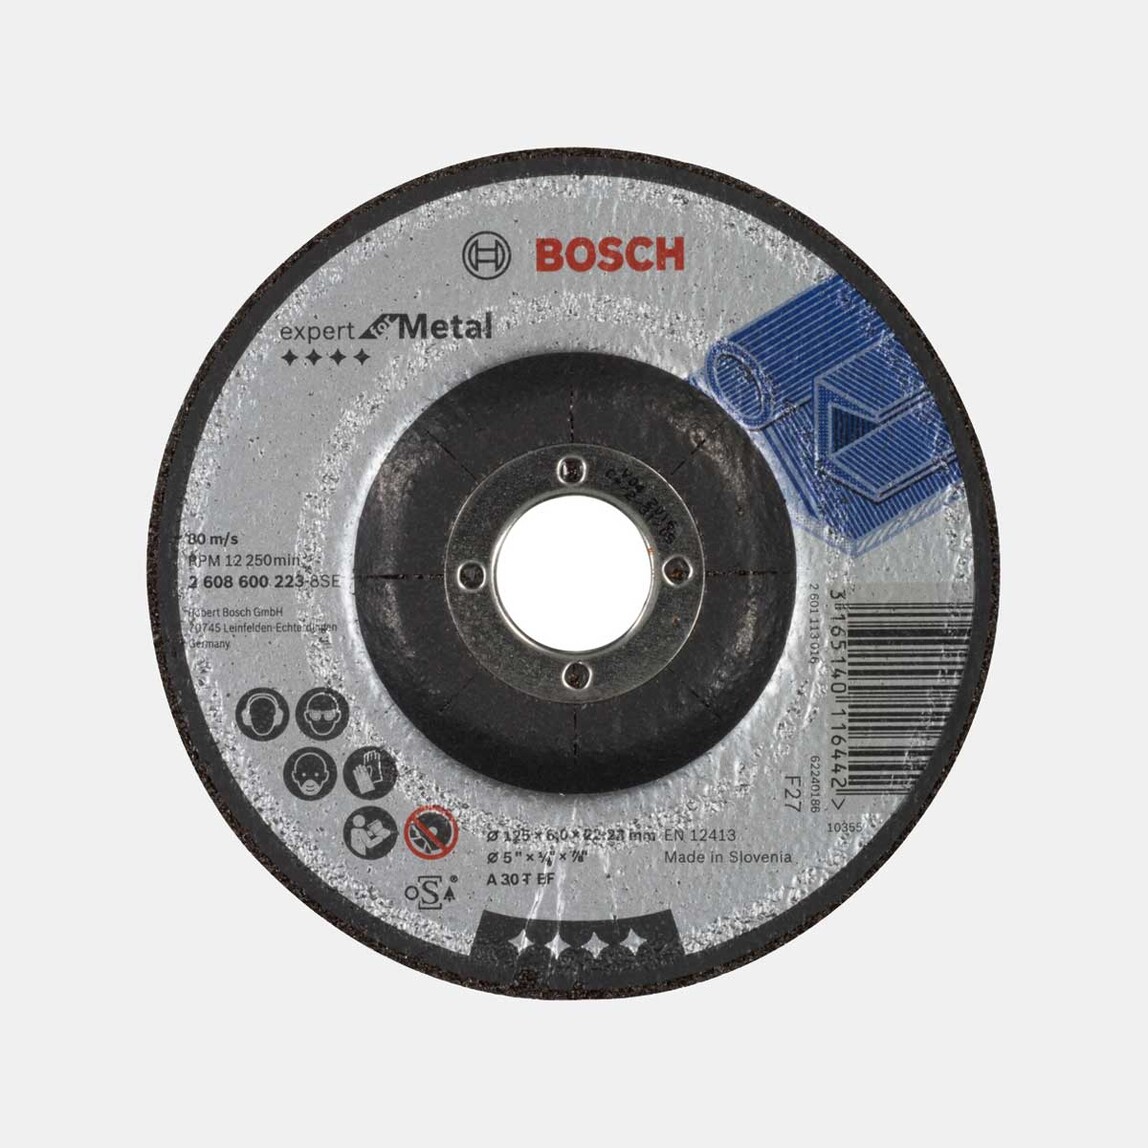    Bosch Taşlama Diski Metal 125X6 mm  